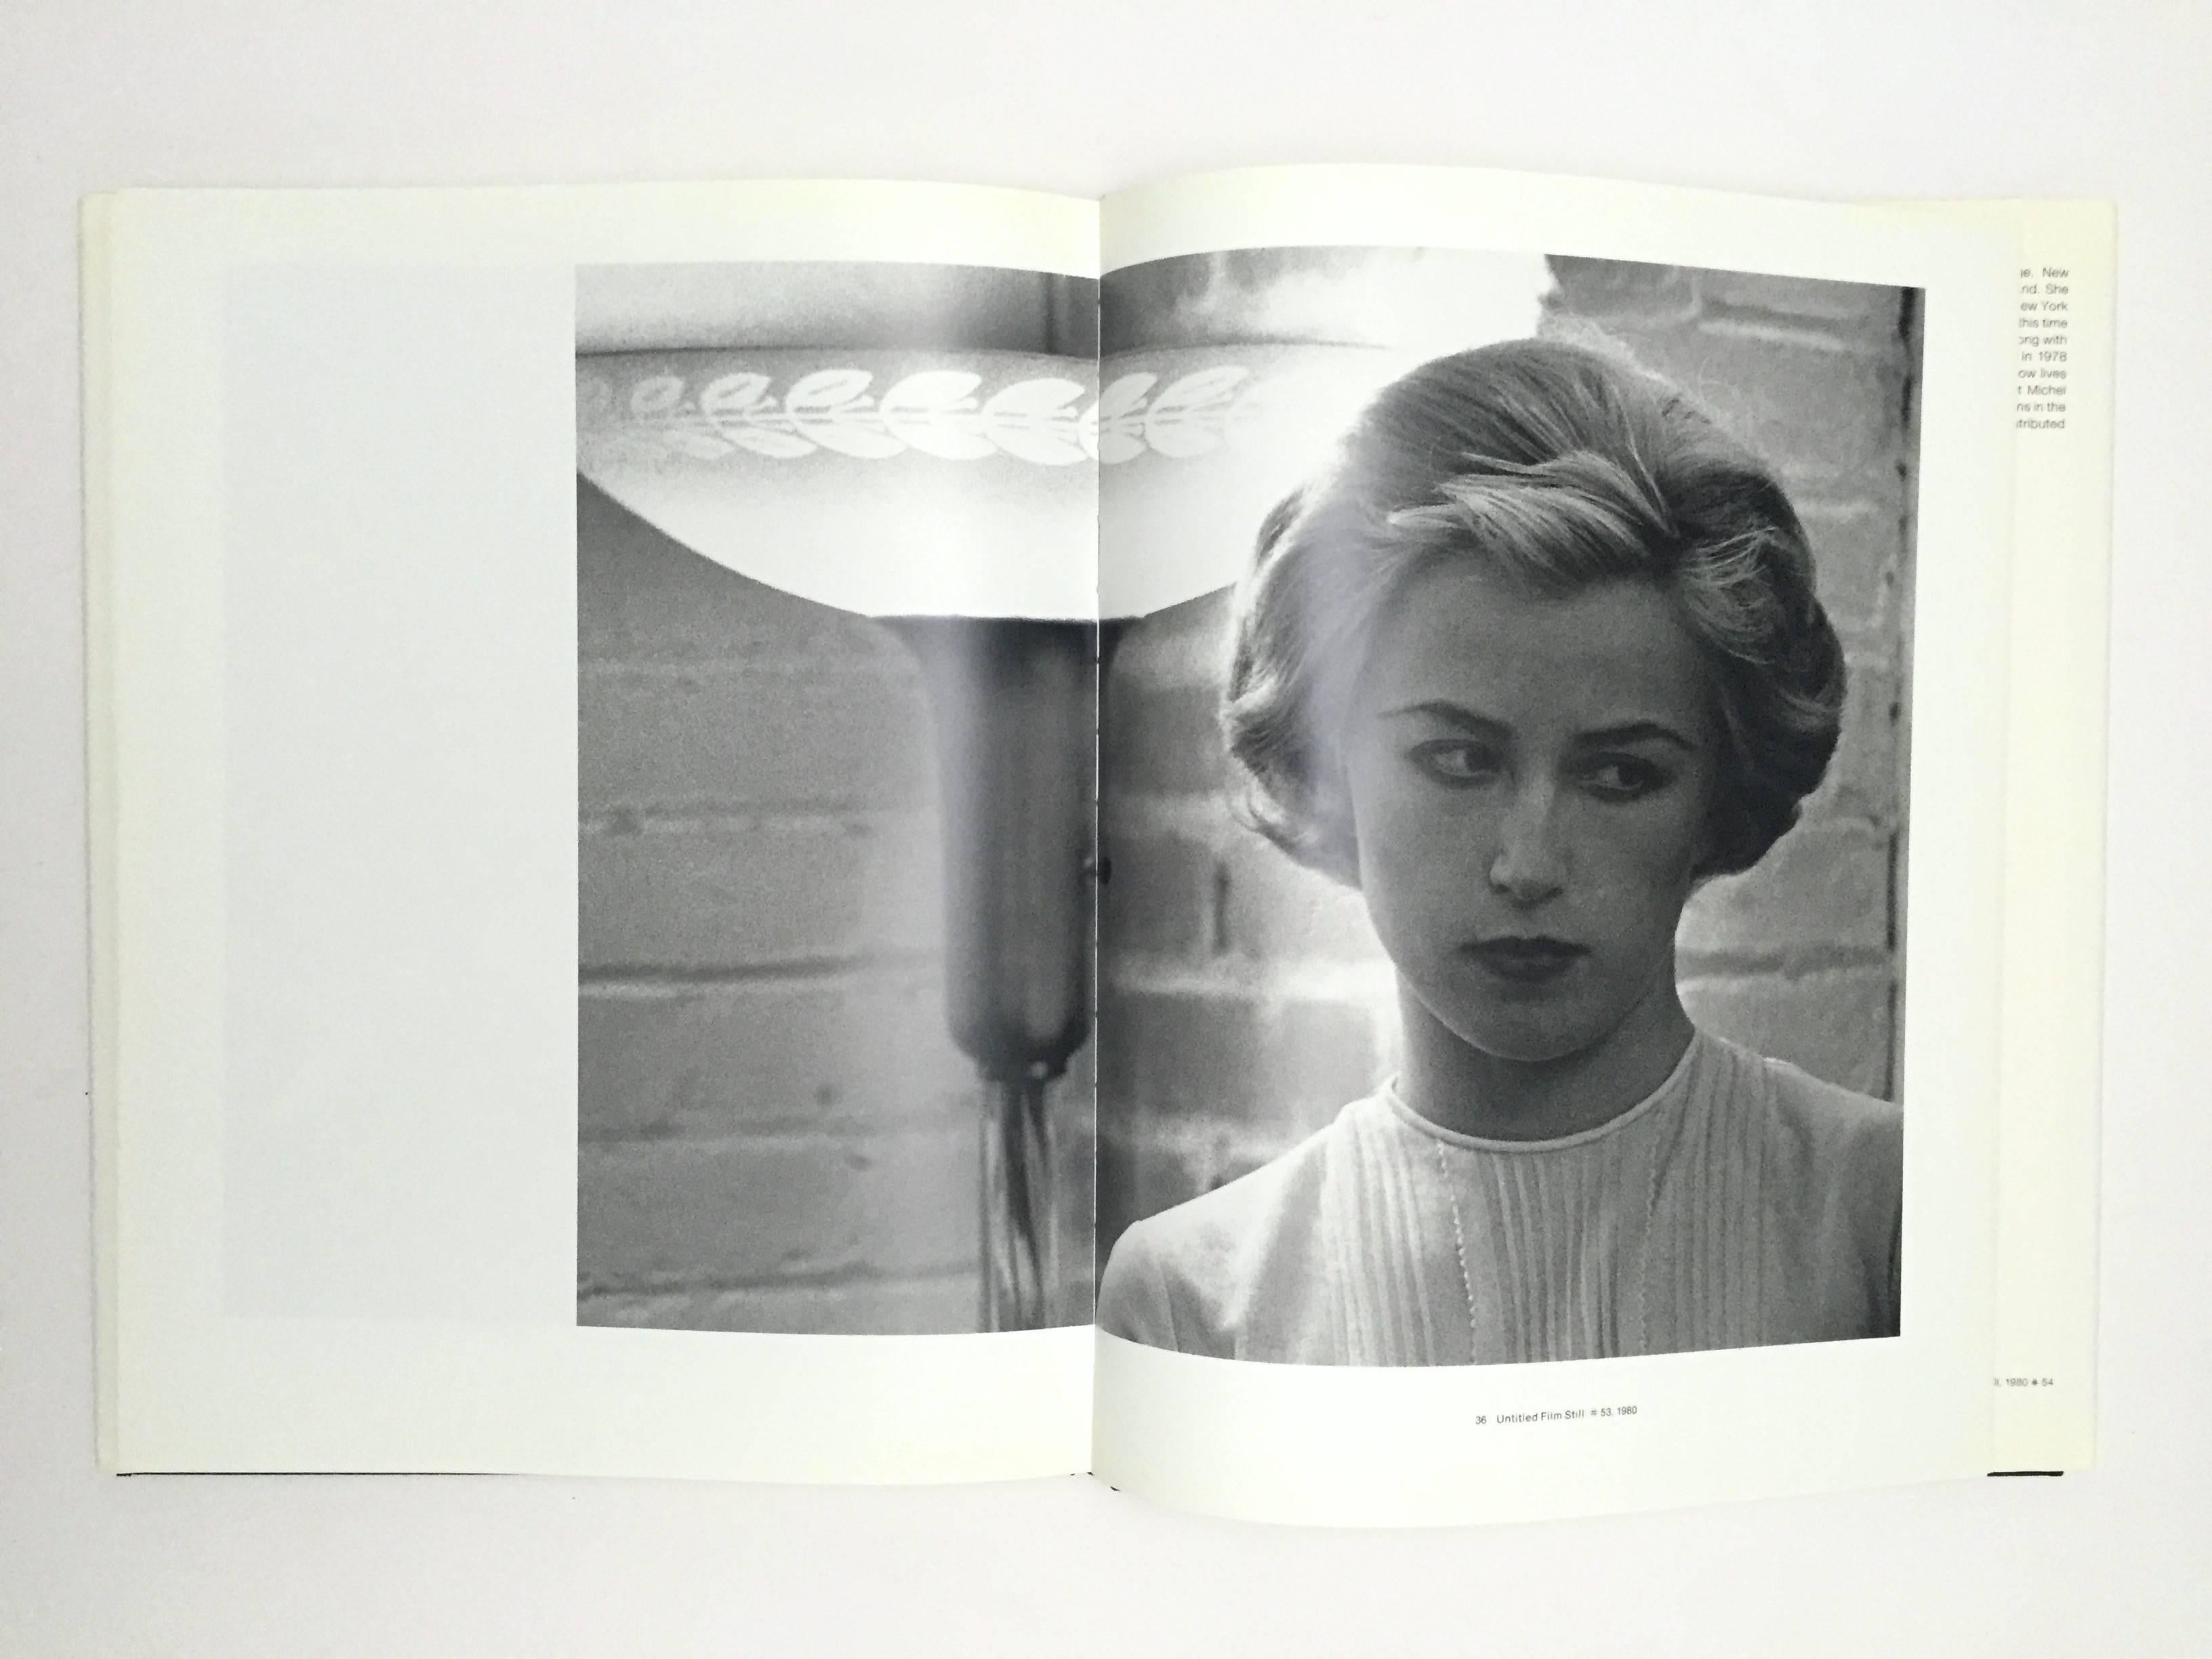 Première édition, publiée par Jonathan Cape, Londres 1990.

Première édition d'une monographie sur les premières œuvres emblématiques de Cindy Sherman : La série de 40 photographies 